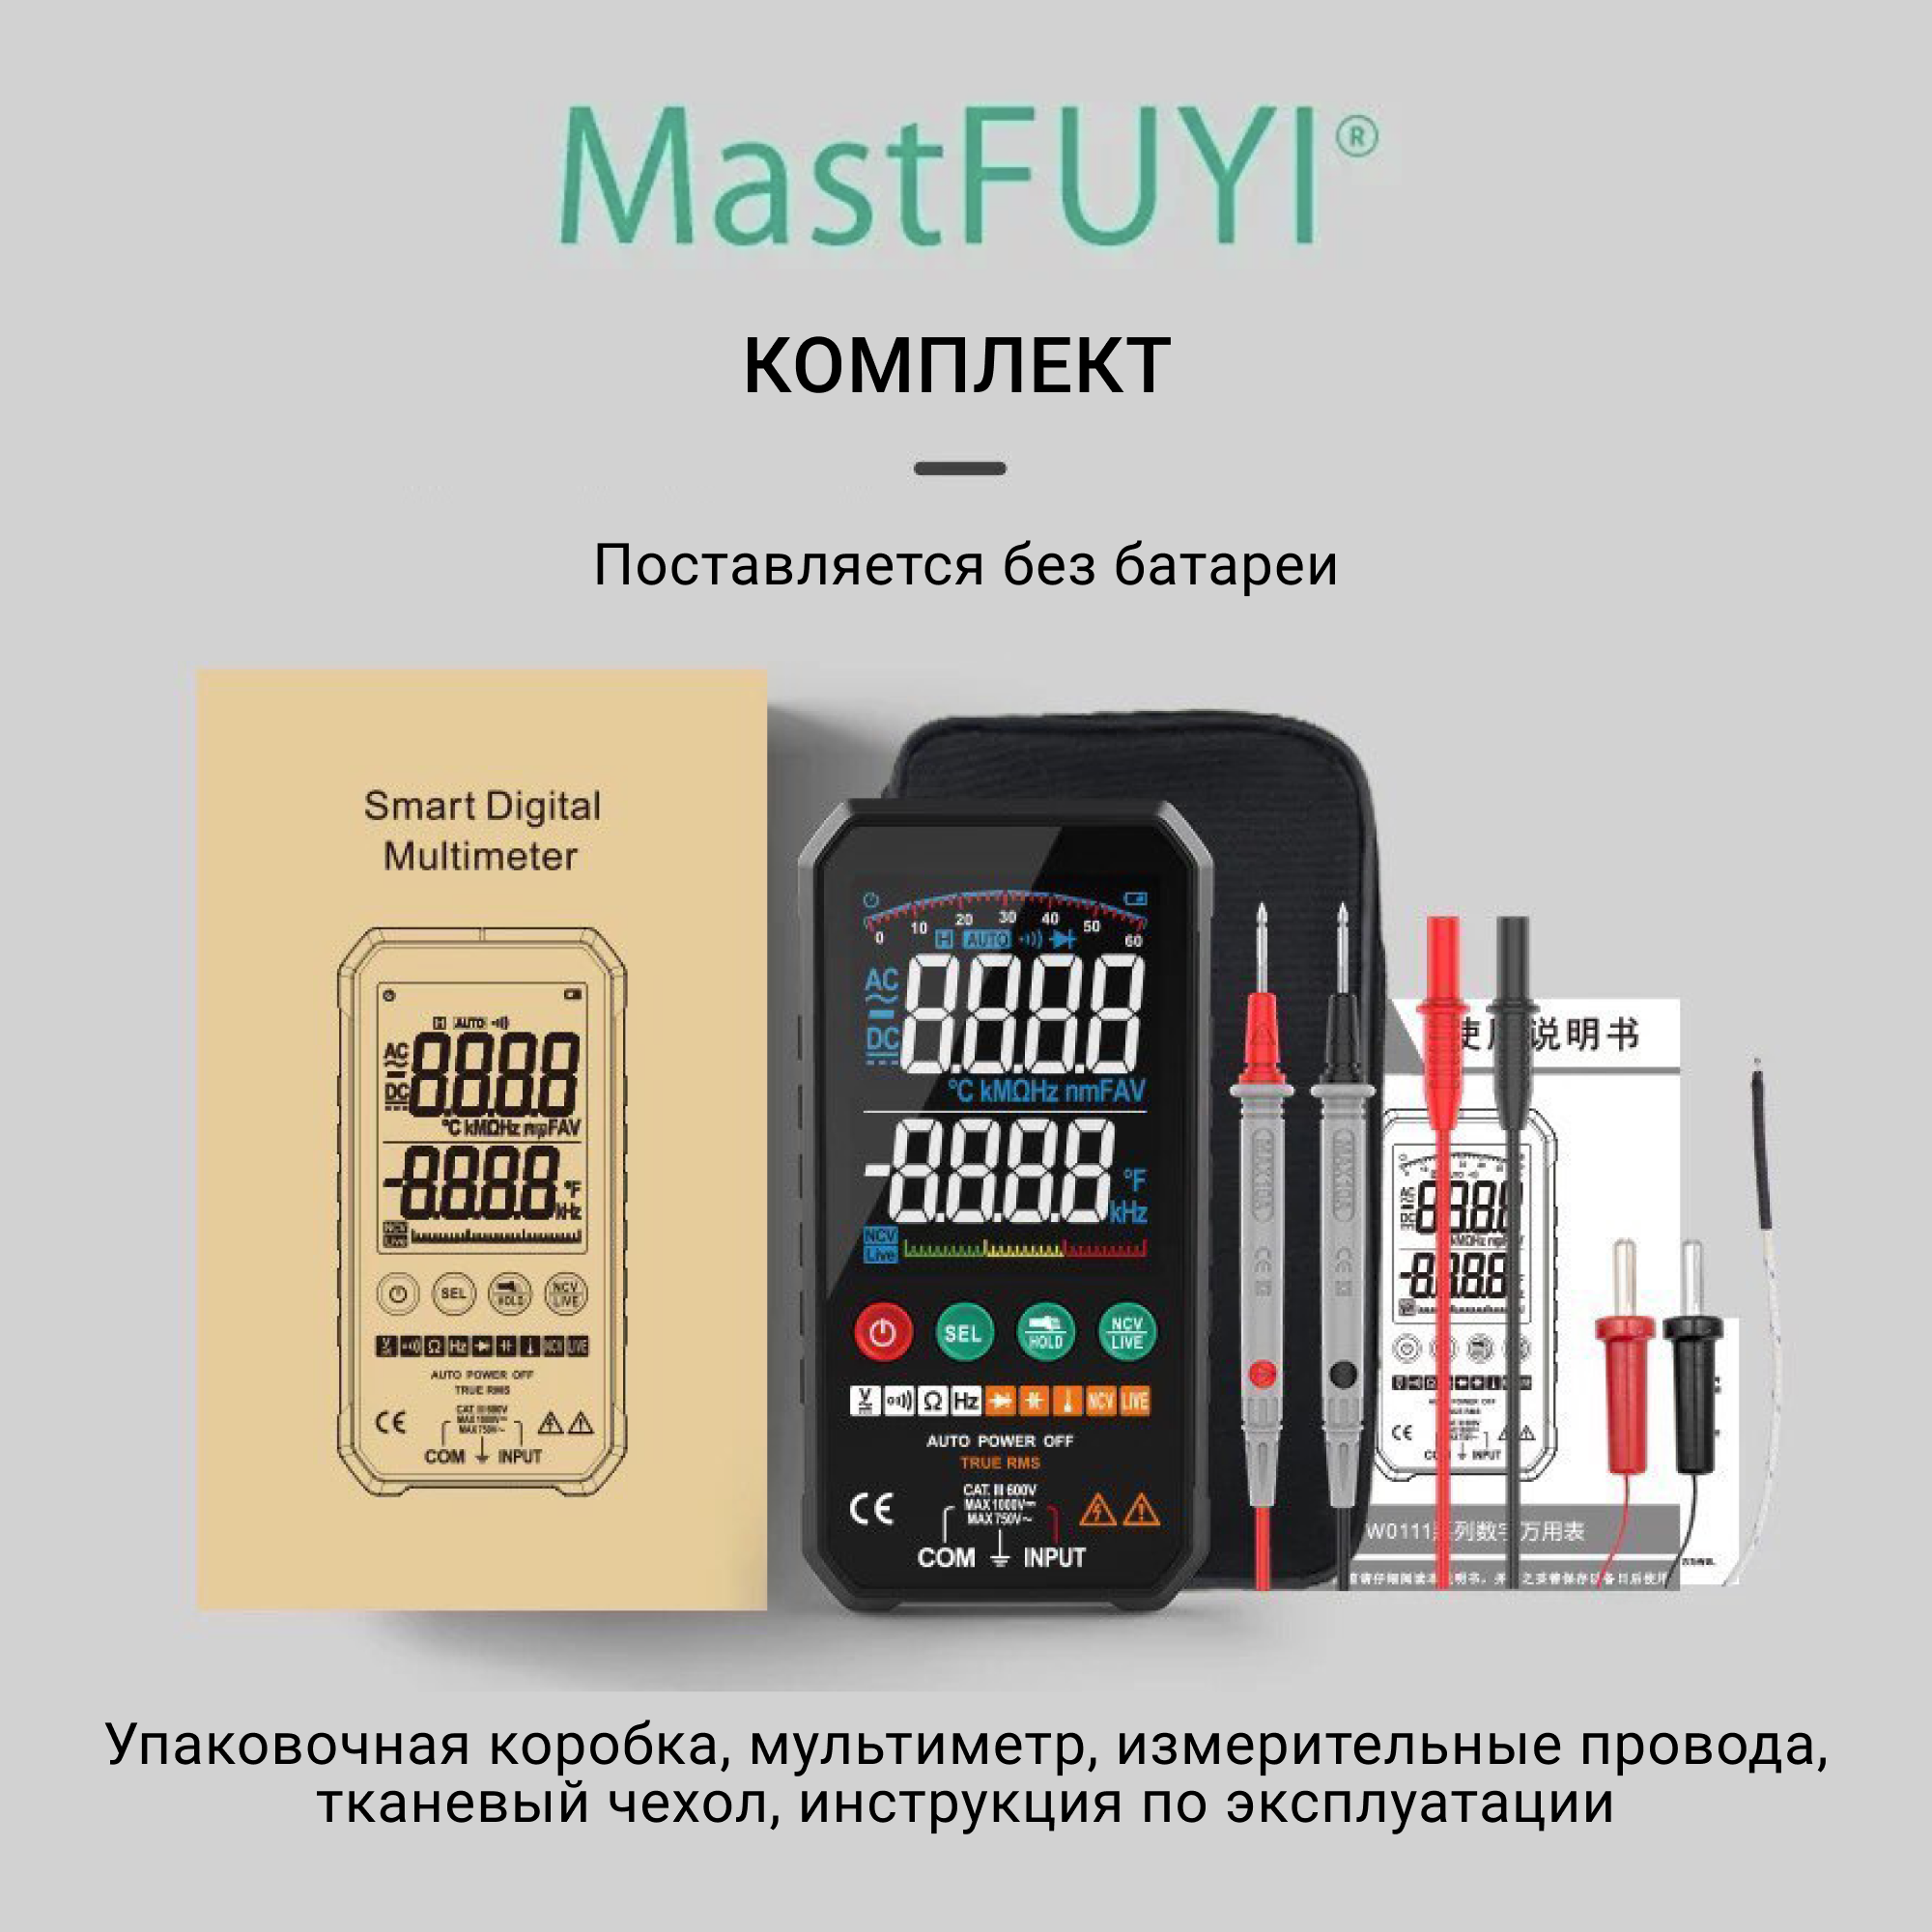 Мультиметр цифровой MastFuyi 107c NicetyMeter с прозвонкой и измерением температуры симисторный 9v регулятор переменного напряжения температуры света и скорости 6000вт у